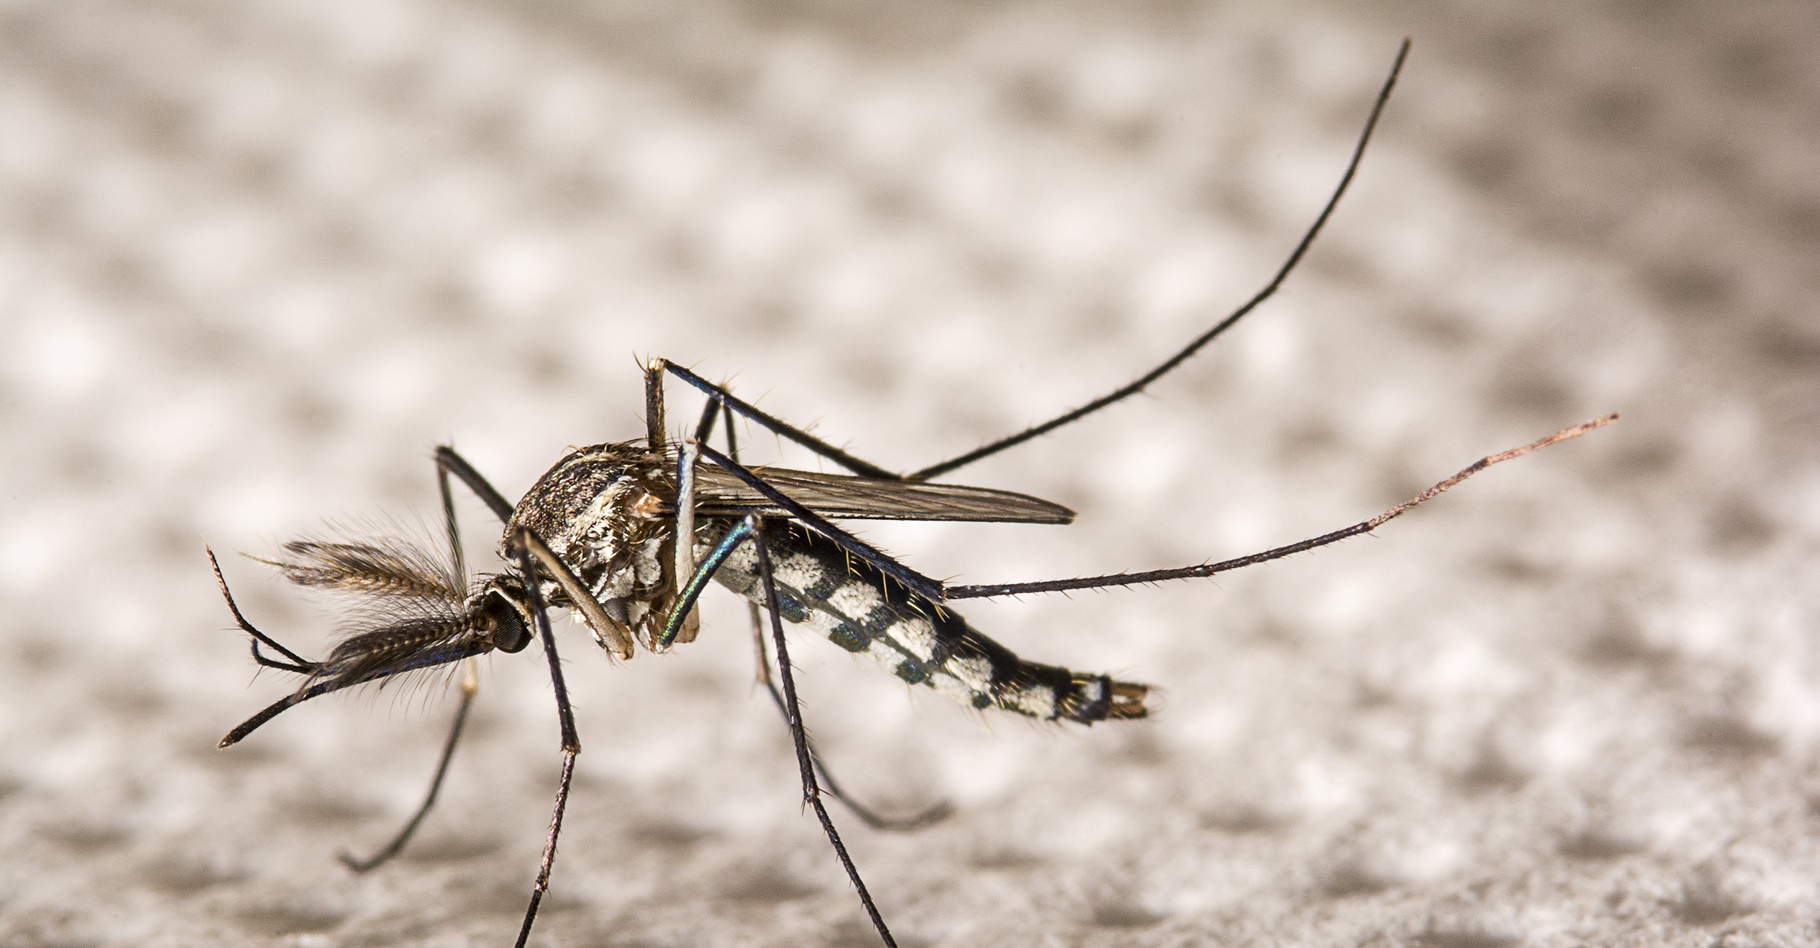 Le virus Zika, qui se transmet par la piqûre de moustique, est associé à la microcéphalie des nouveau-nés. Une recherche suggère pourtant qu'il pourrait être une arme contre le cancer du cerveau. © nuwatphoto, Shutterstock